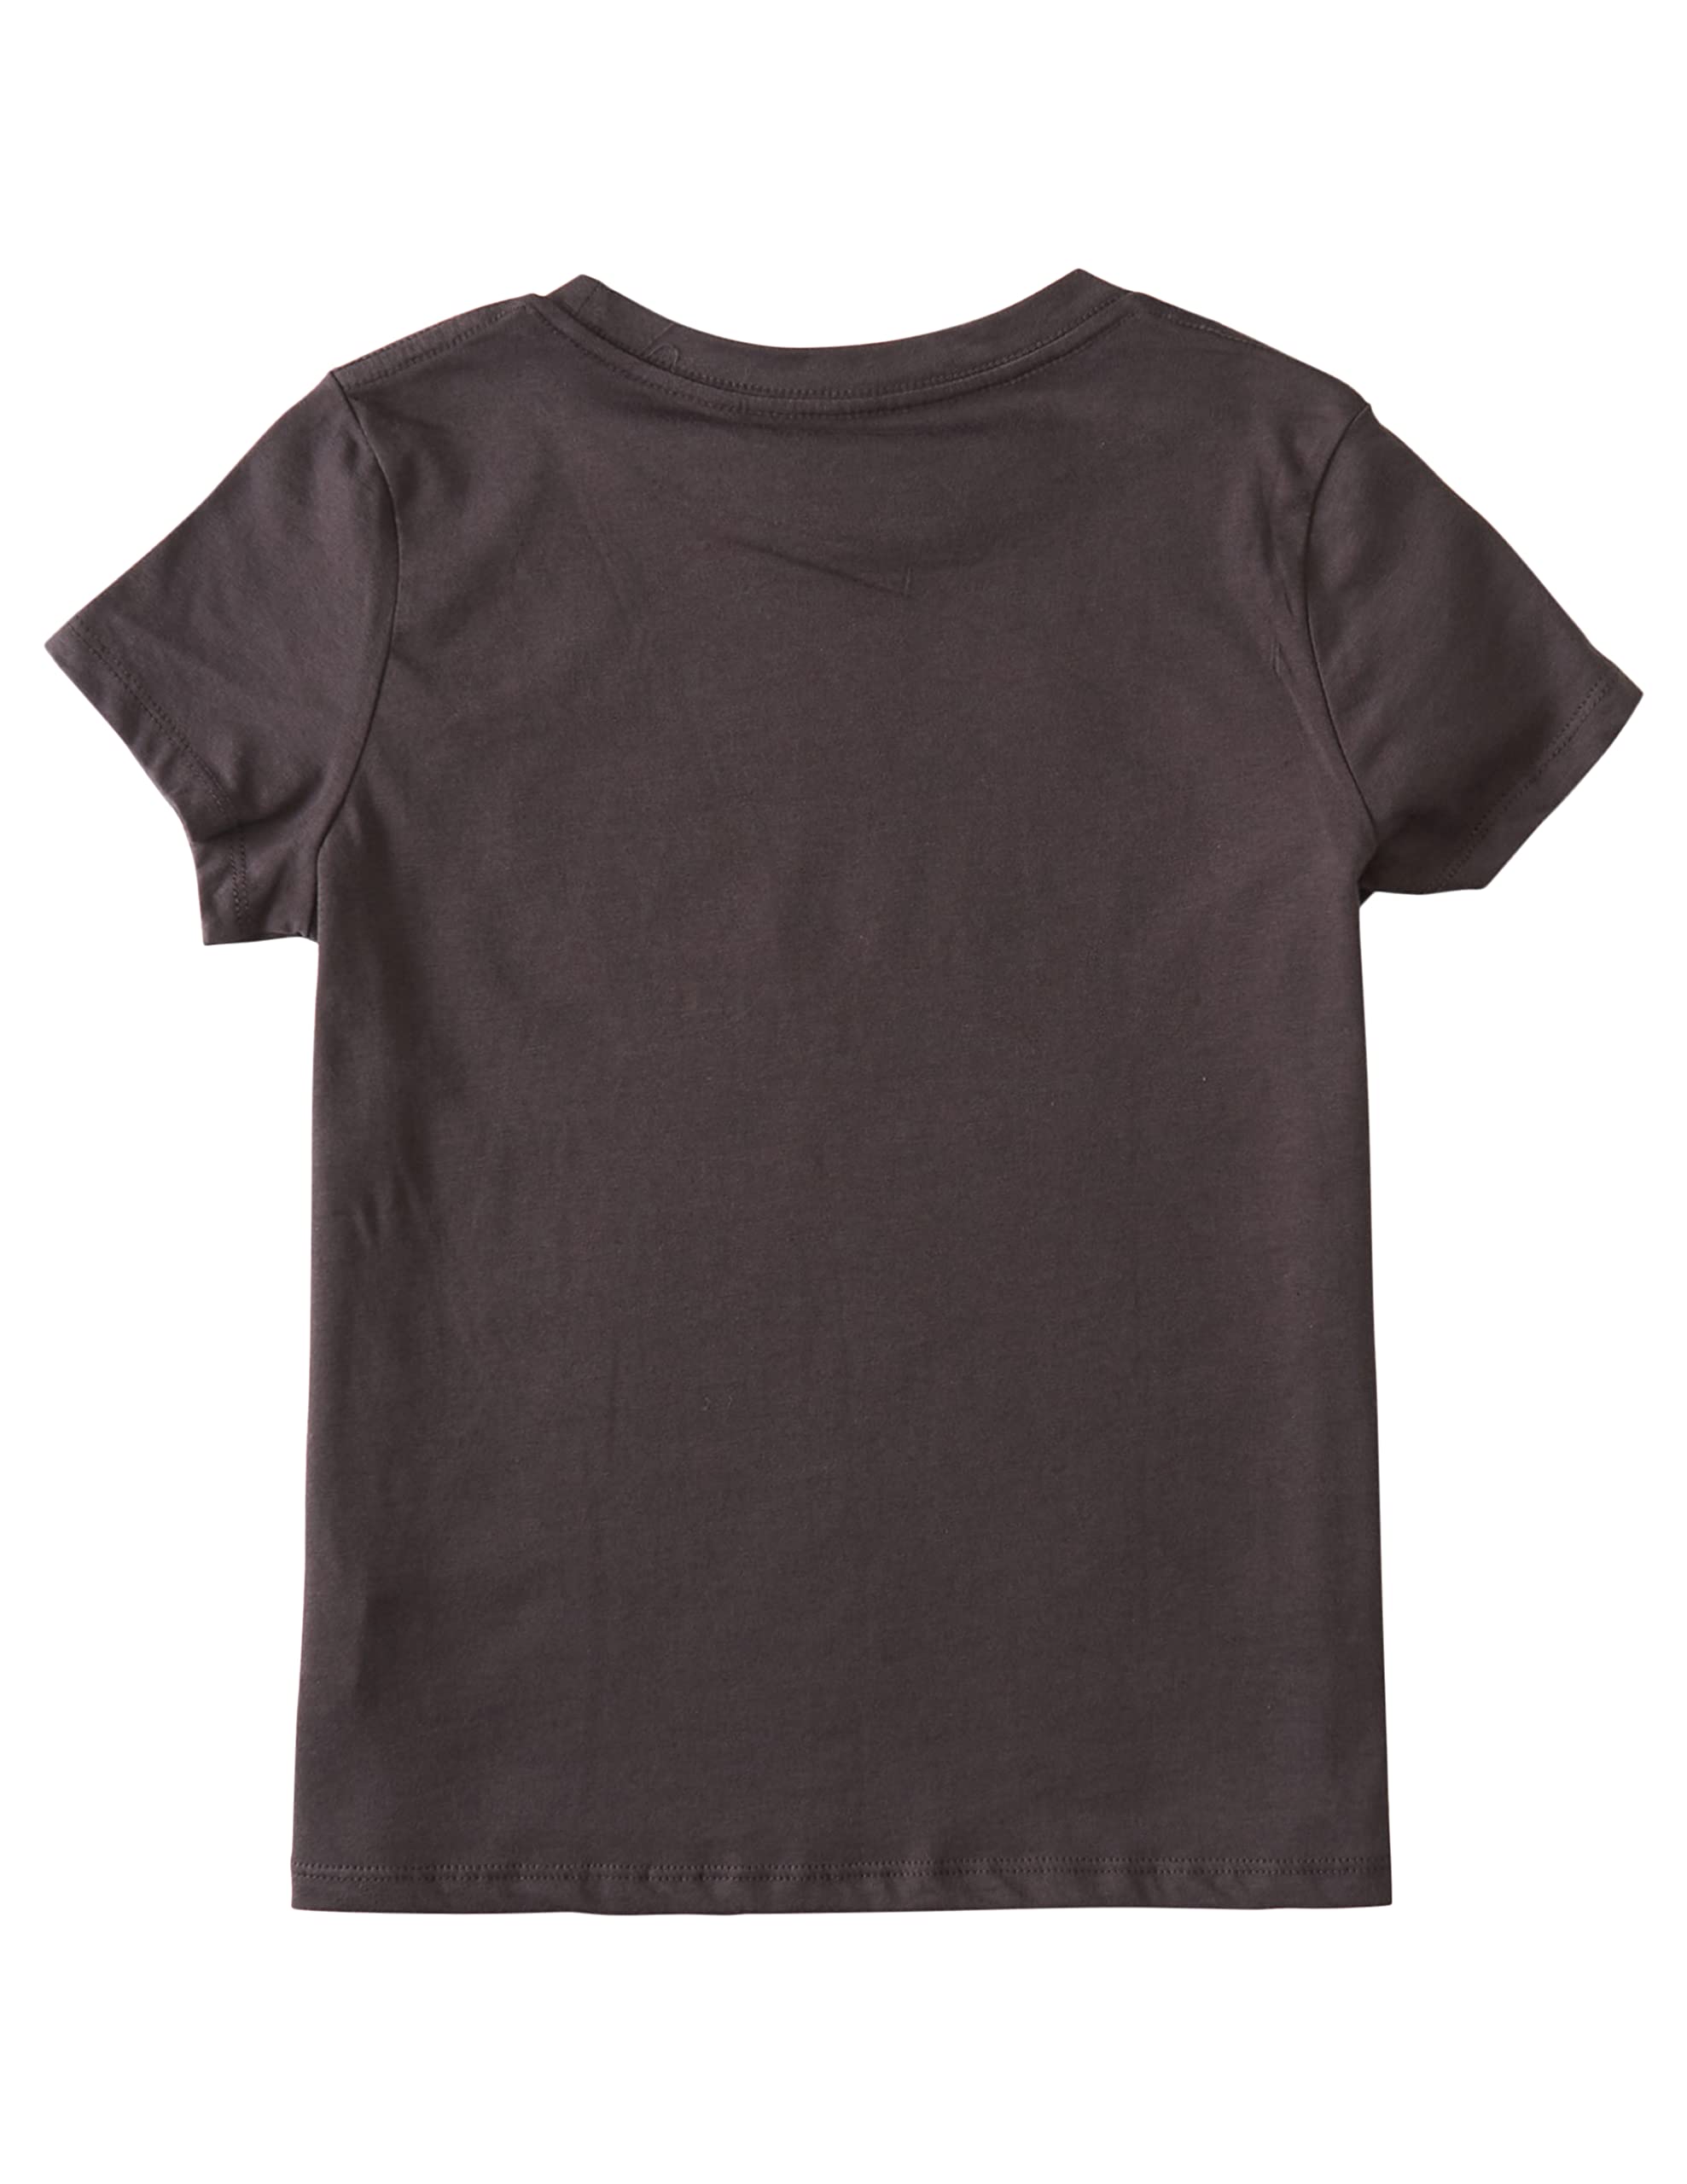 Billabong Girls' Short Sleeve Graphic Tee T-Shirt